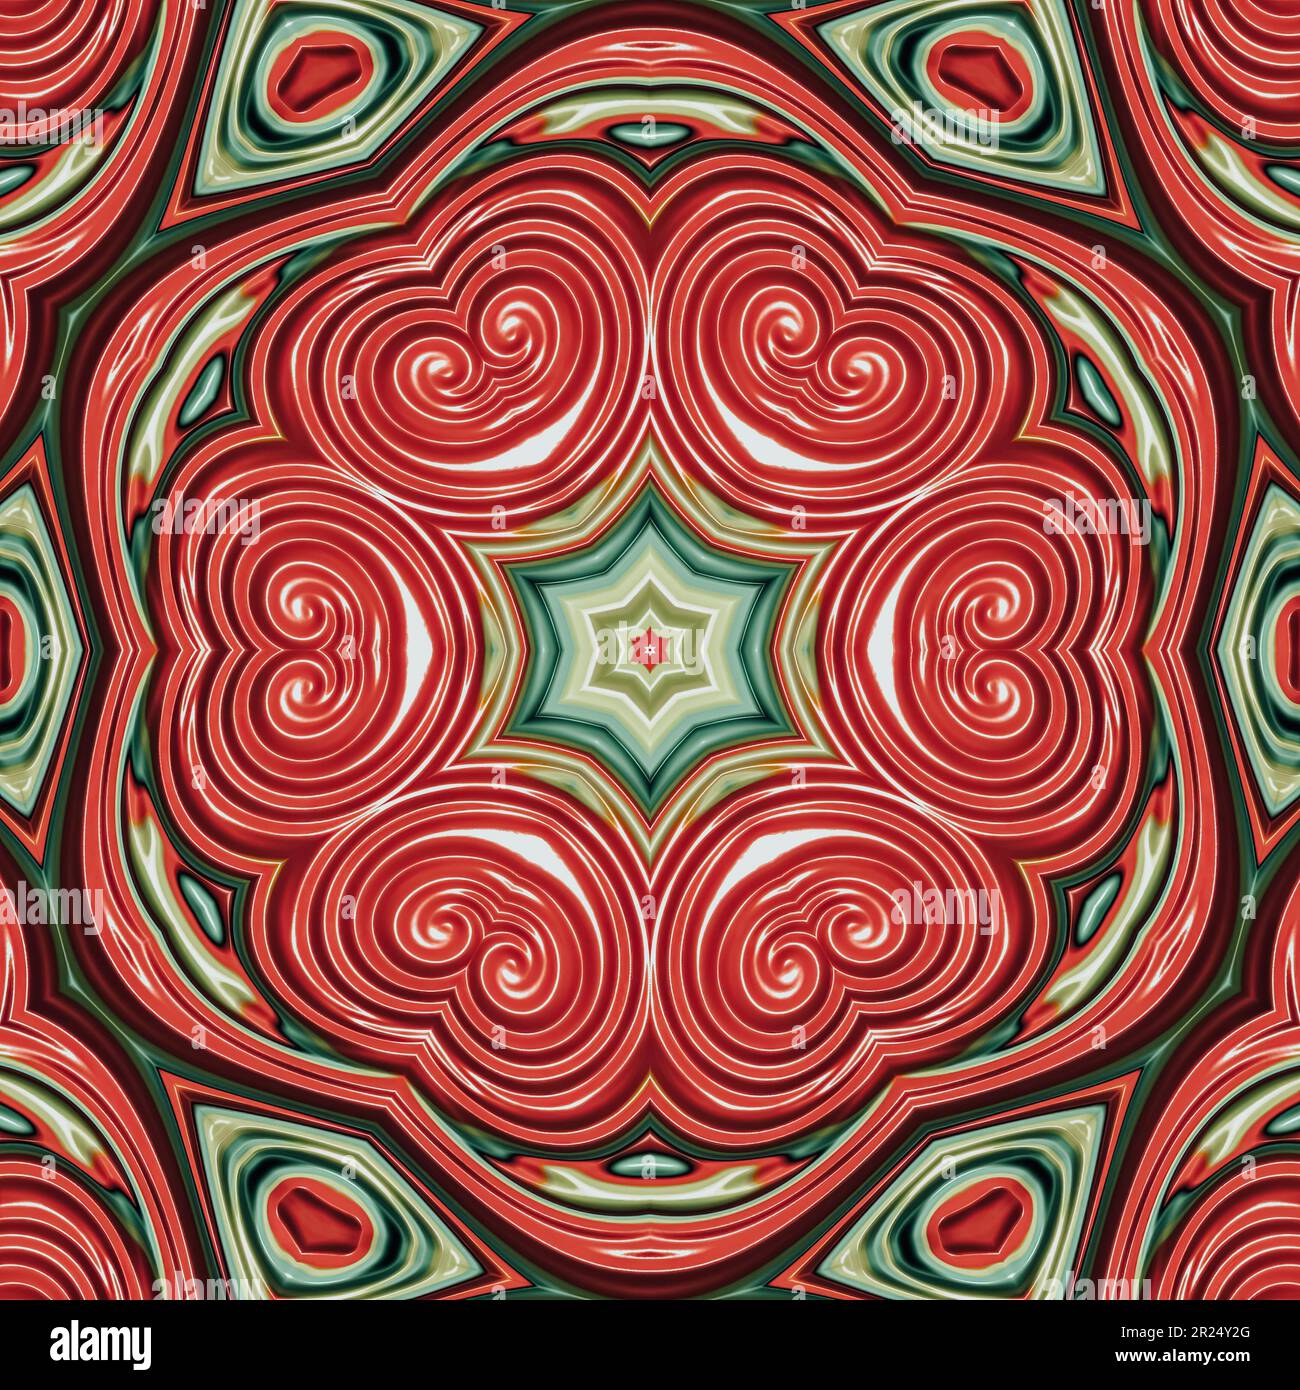 Serie de patrones de caleidoscopio abstracto, conjunto de 9. Líneas de líquido en rojo y verde. Patrón floral céntrico Foto de stock